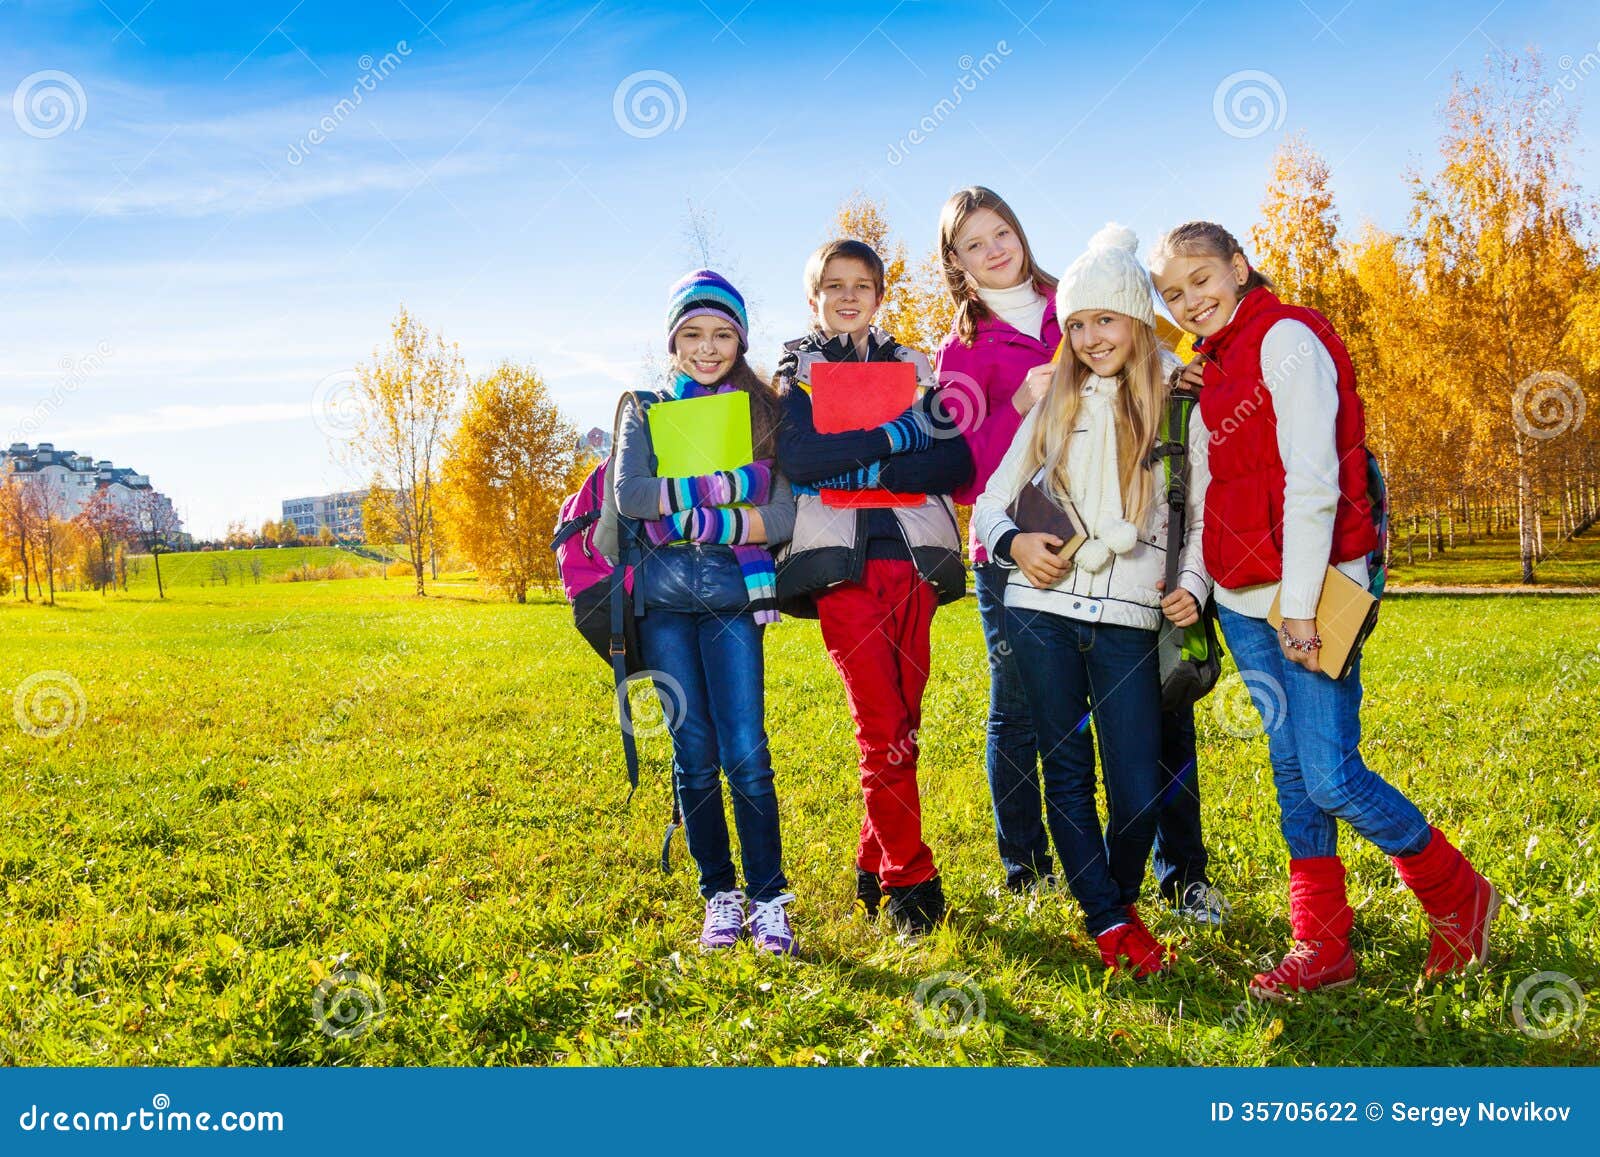 Гуляйте безопасно. Школьники на прогулке. Подростки на прогулке. Школьники в парке. Счастливые подростки гуляют в парке.